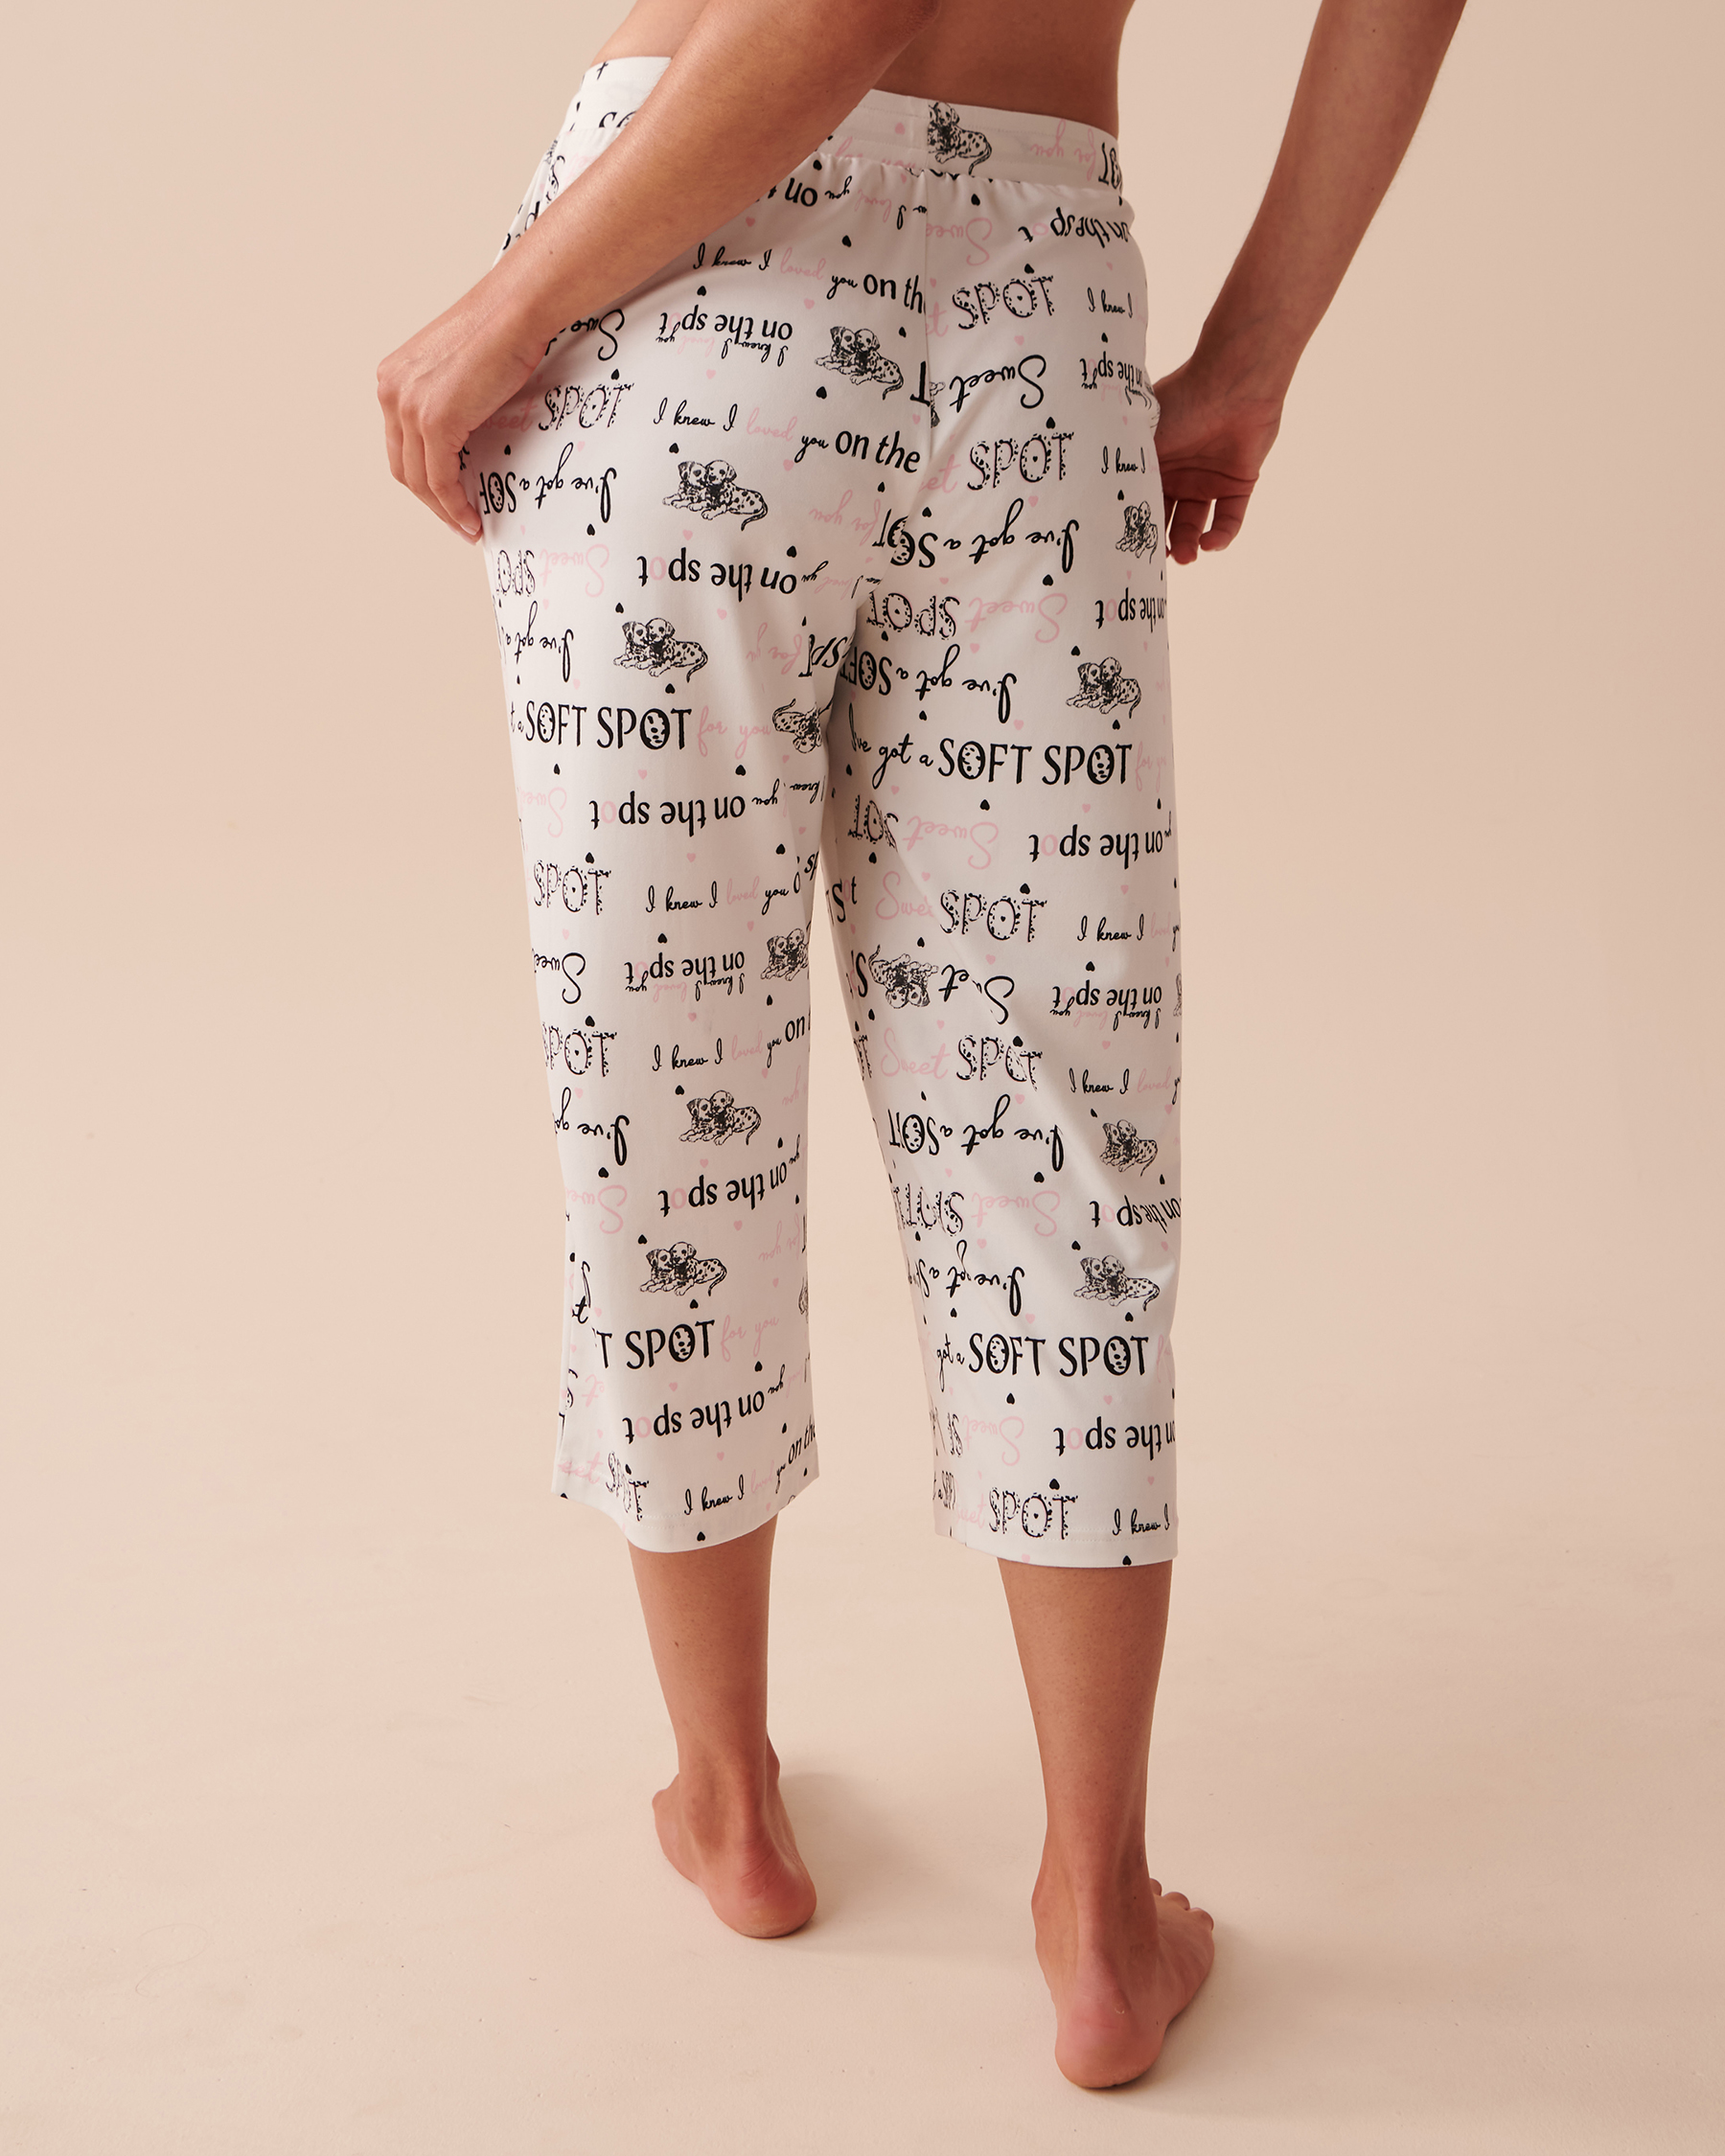 Women's pajamas